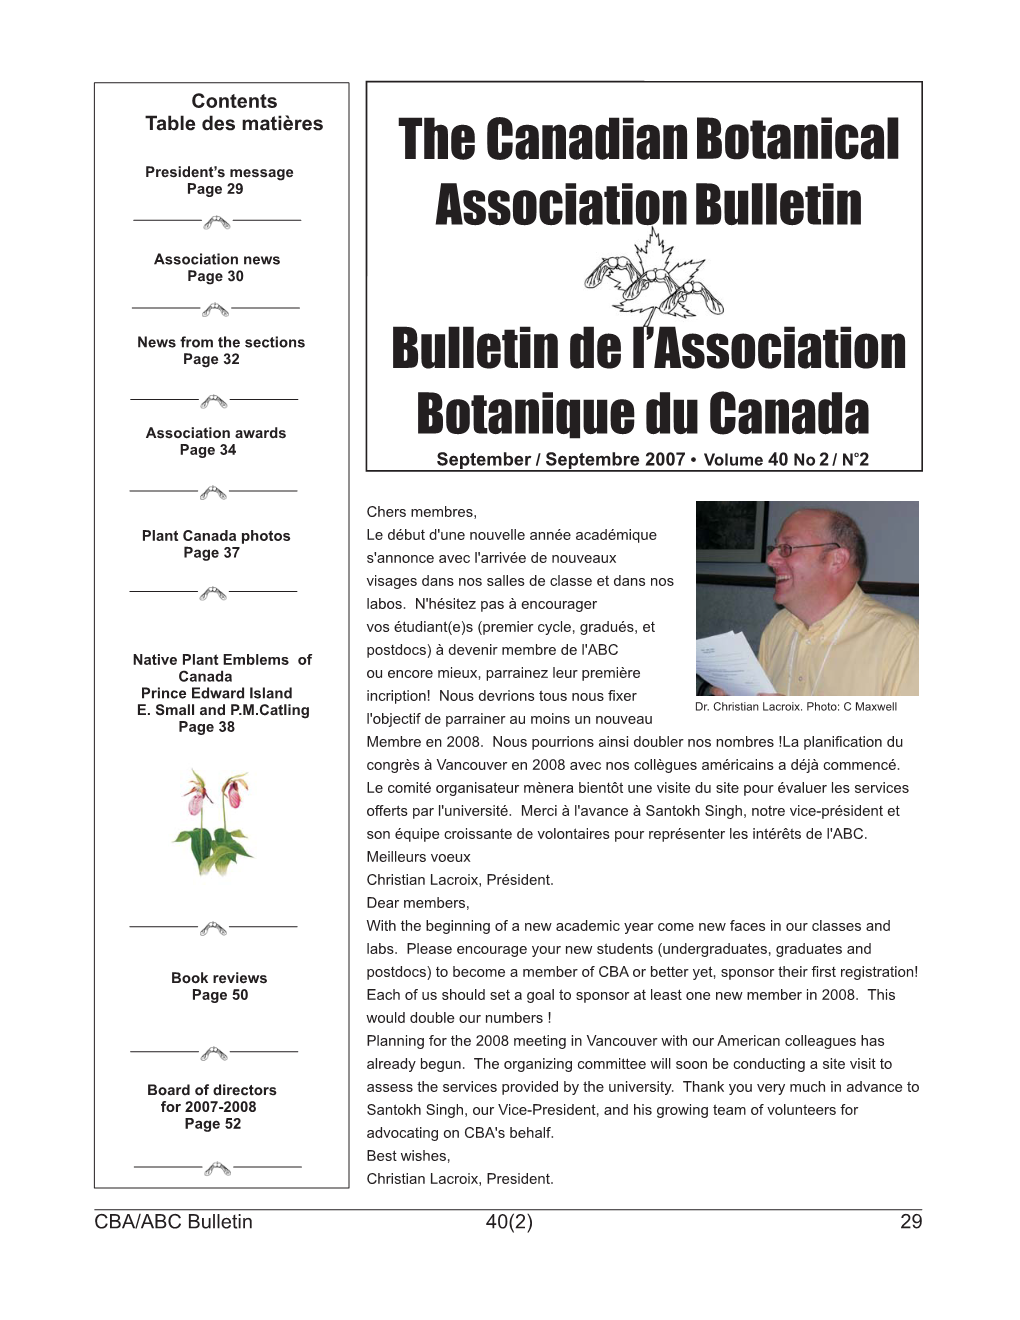 The Canadian Botanical Association Bulletin De L'association Botanique